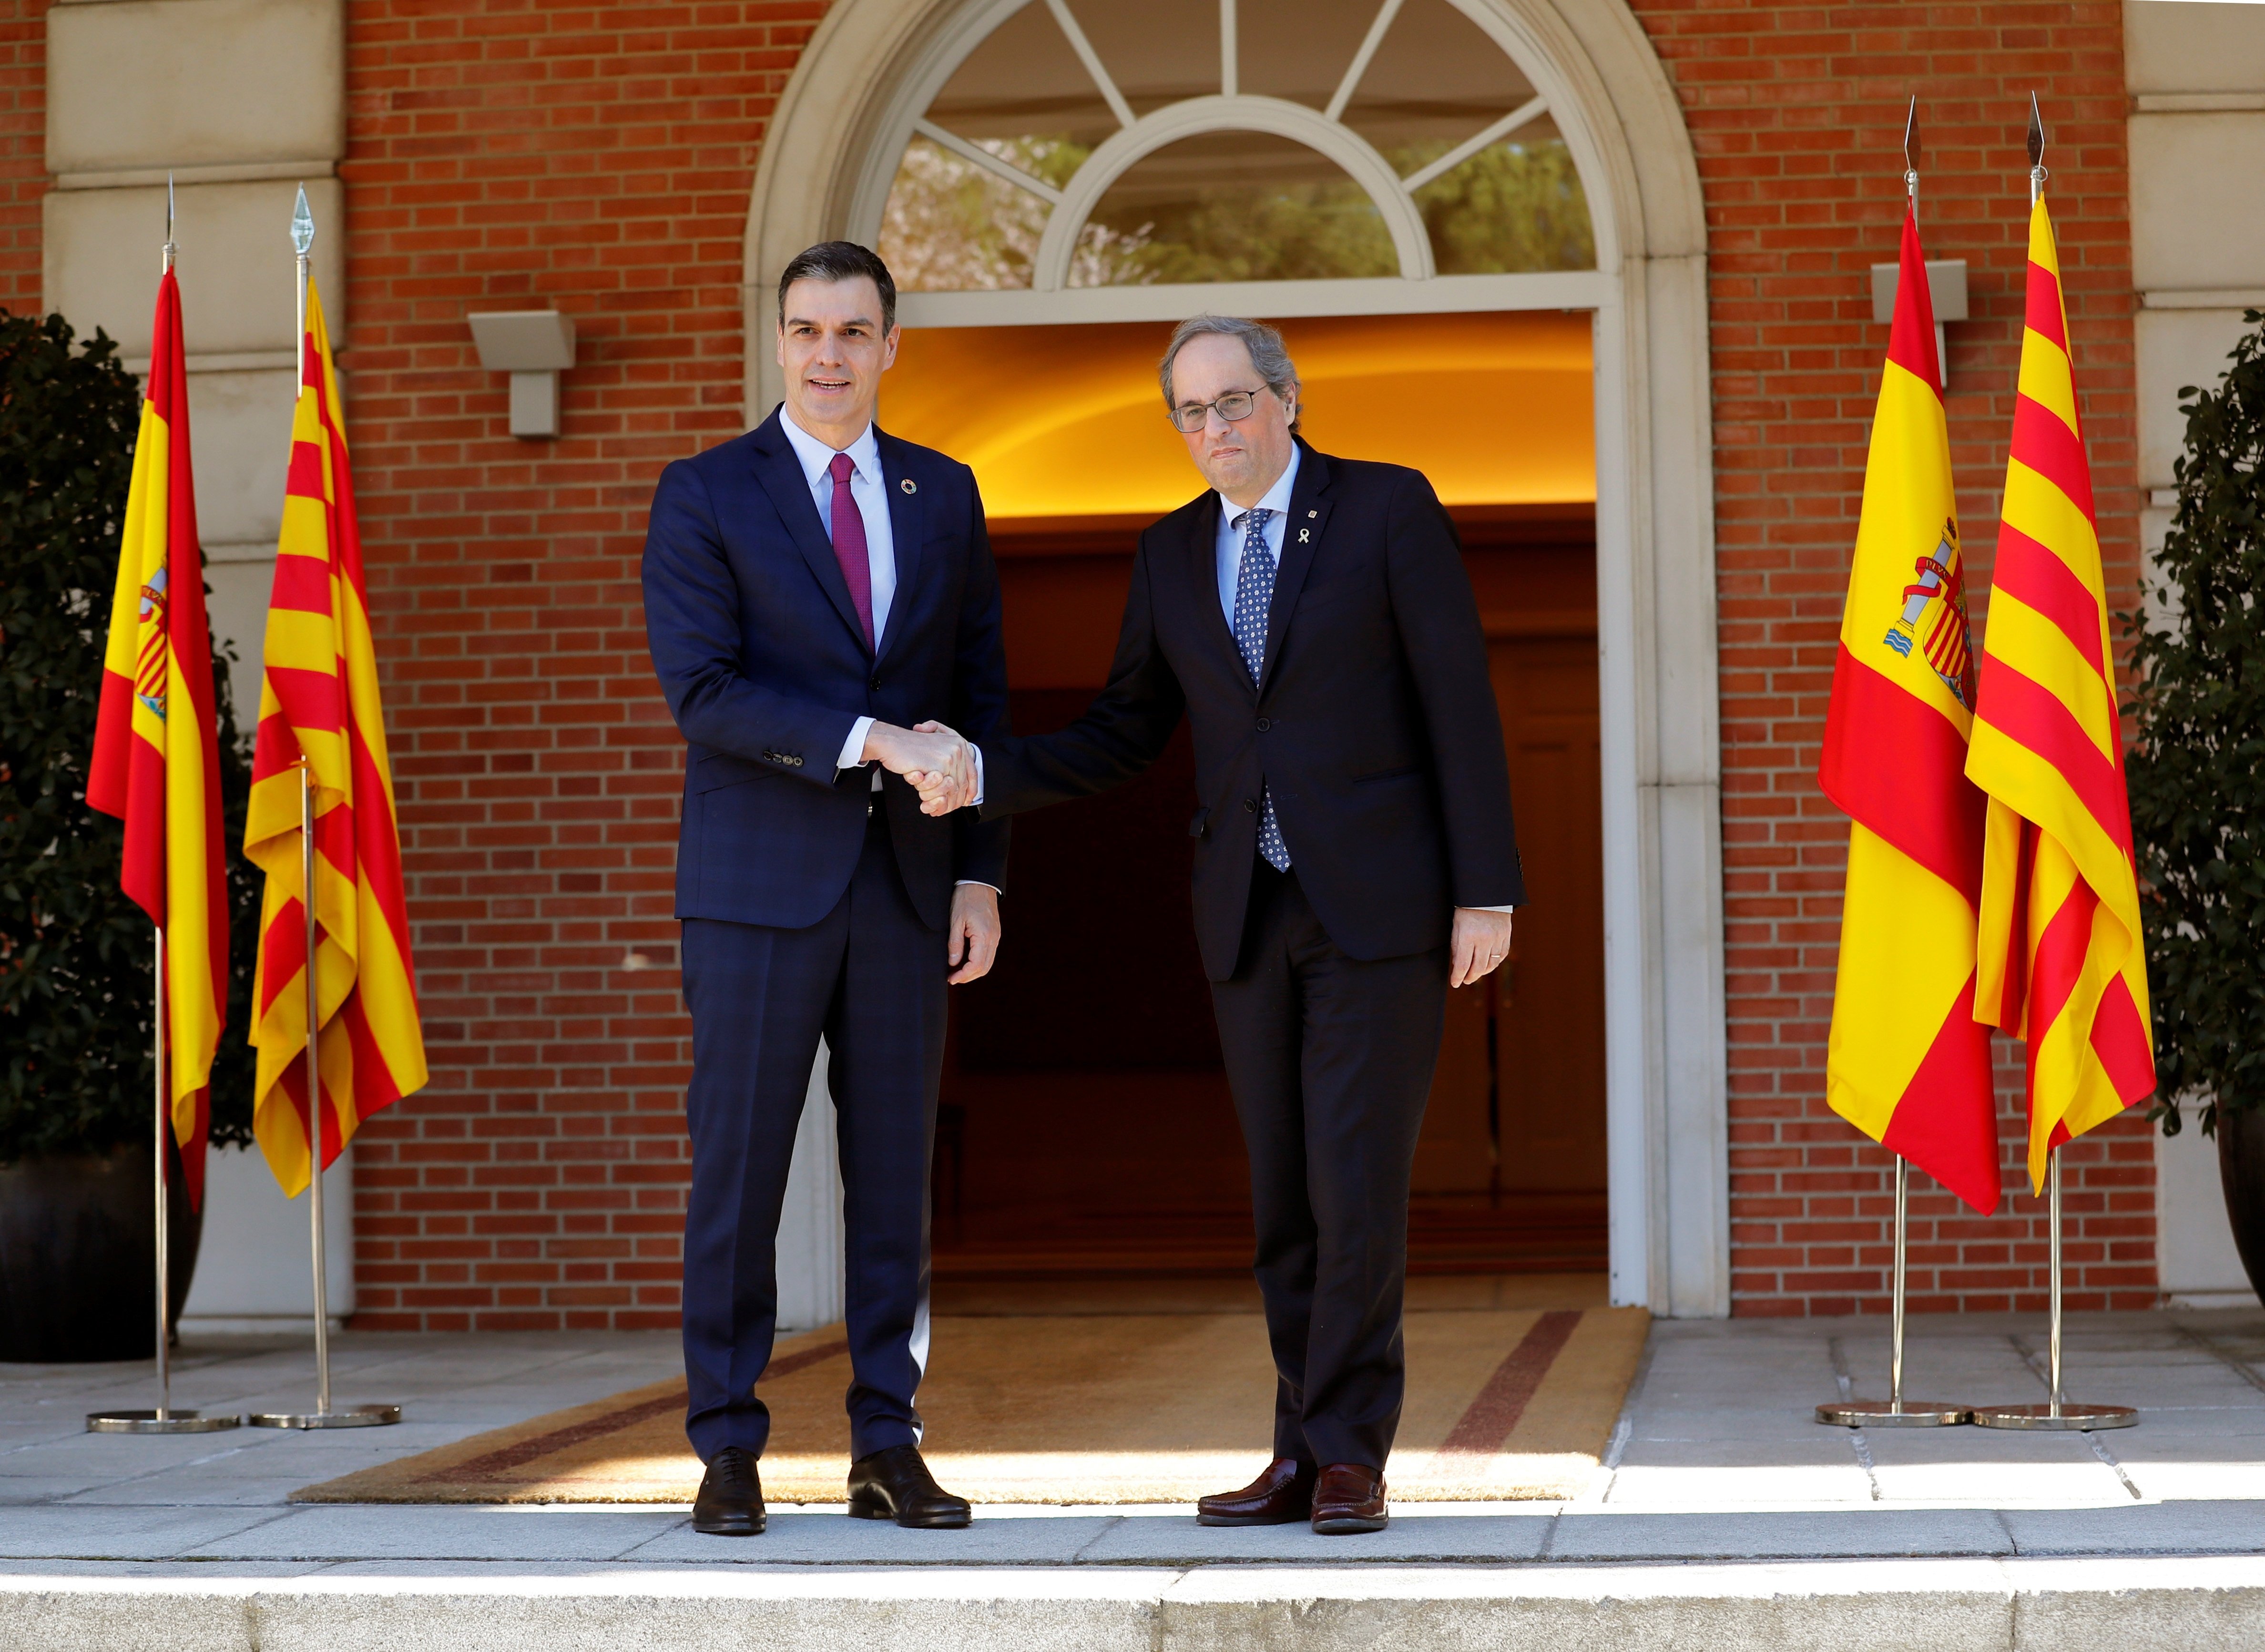 ¿Crees que es necesario un mediador para el diálogo sobre Catalunya?